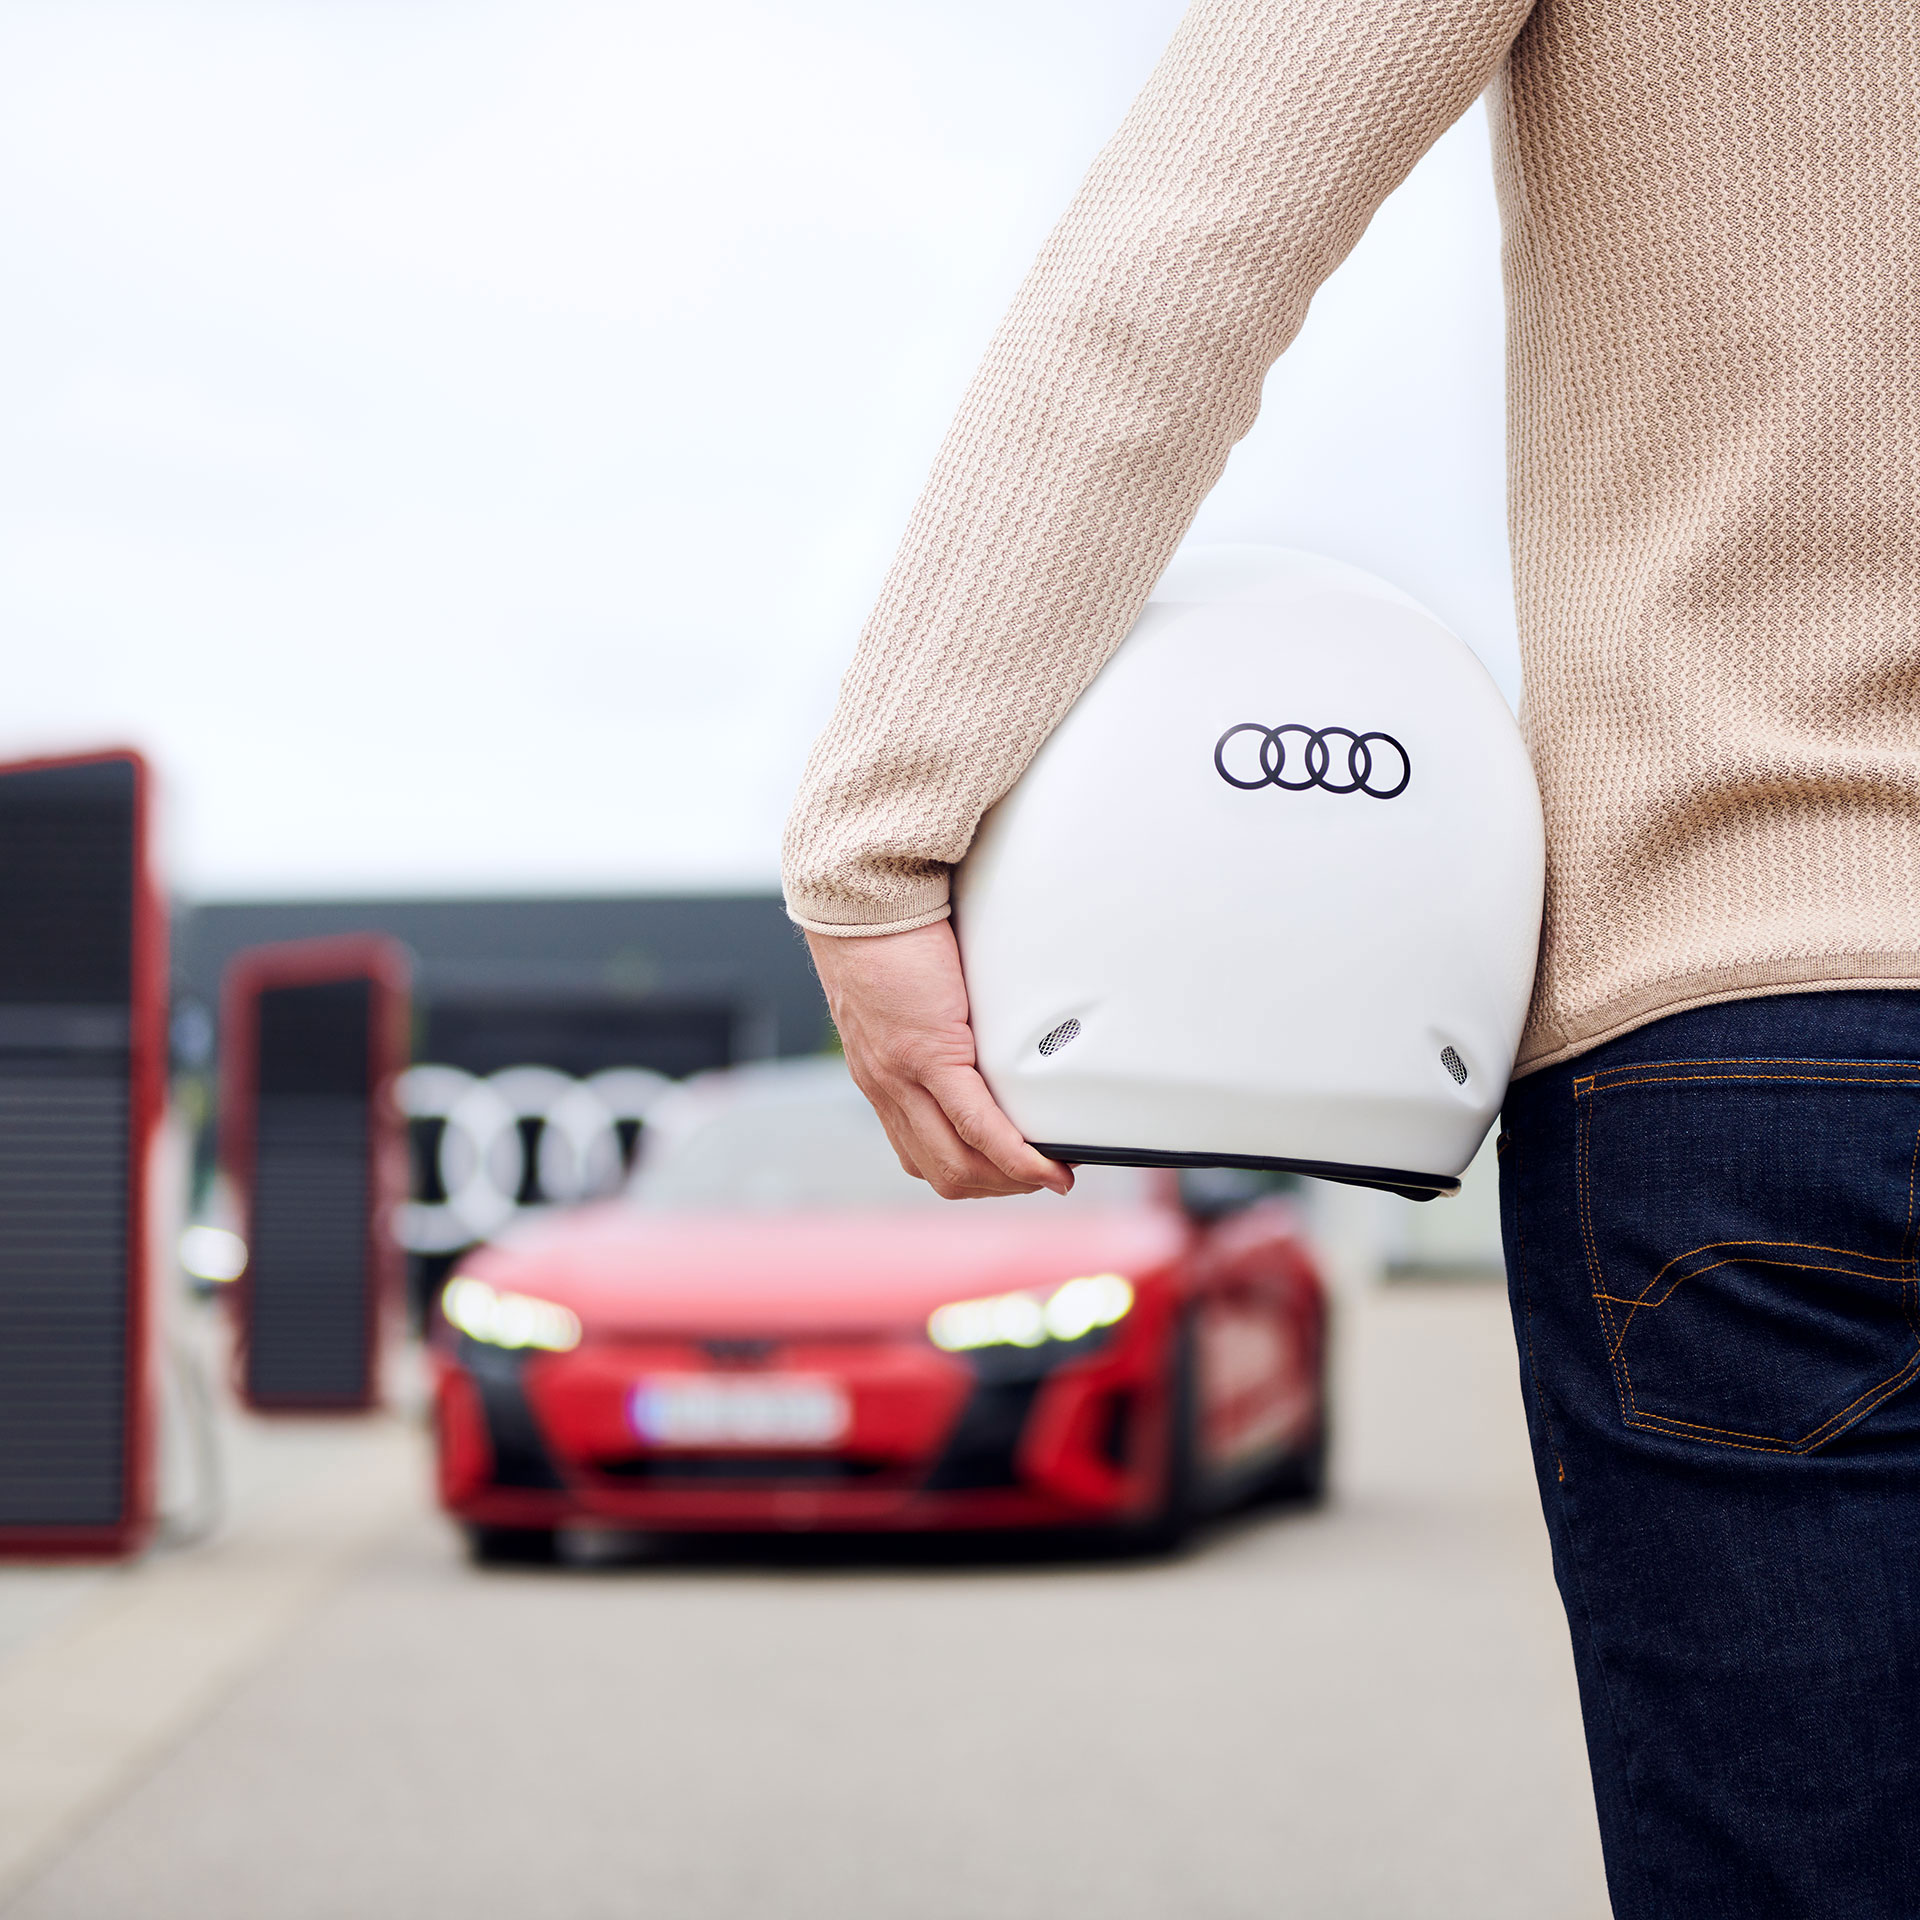 Rückansicht eines Mannes, der einen Helm mit Audi-Logo unter dem Arm trägt und auf ein rotes Audi Modell zugeht